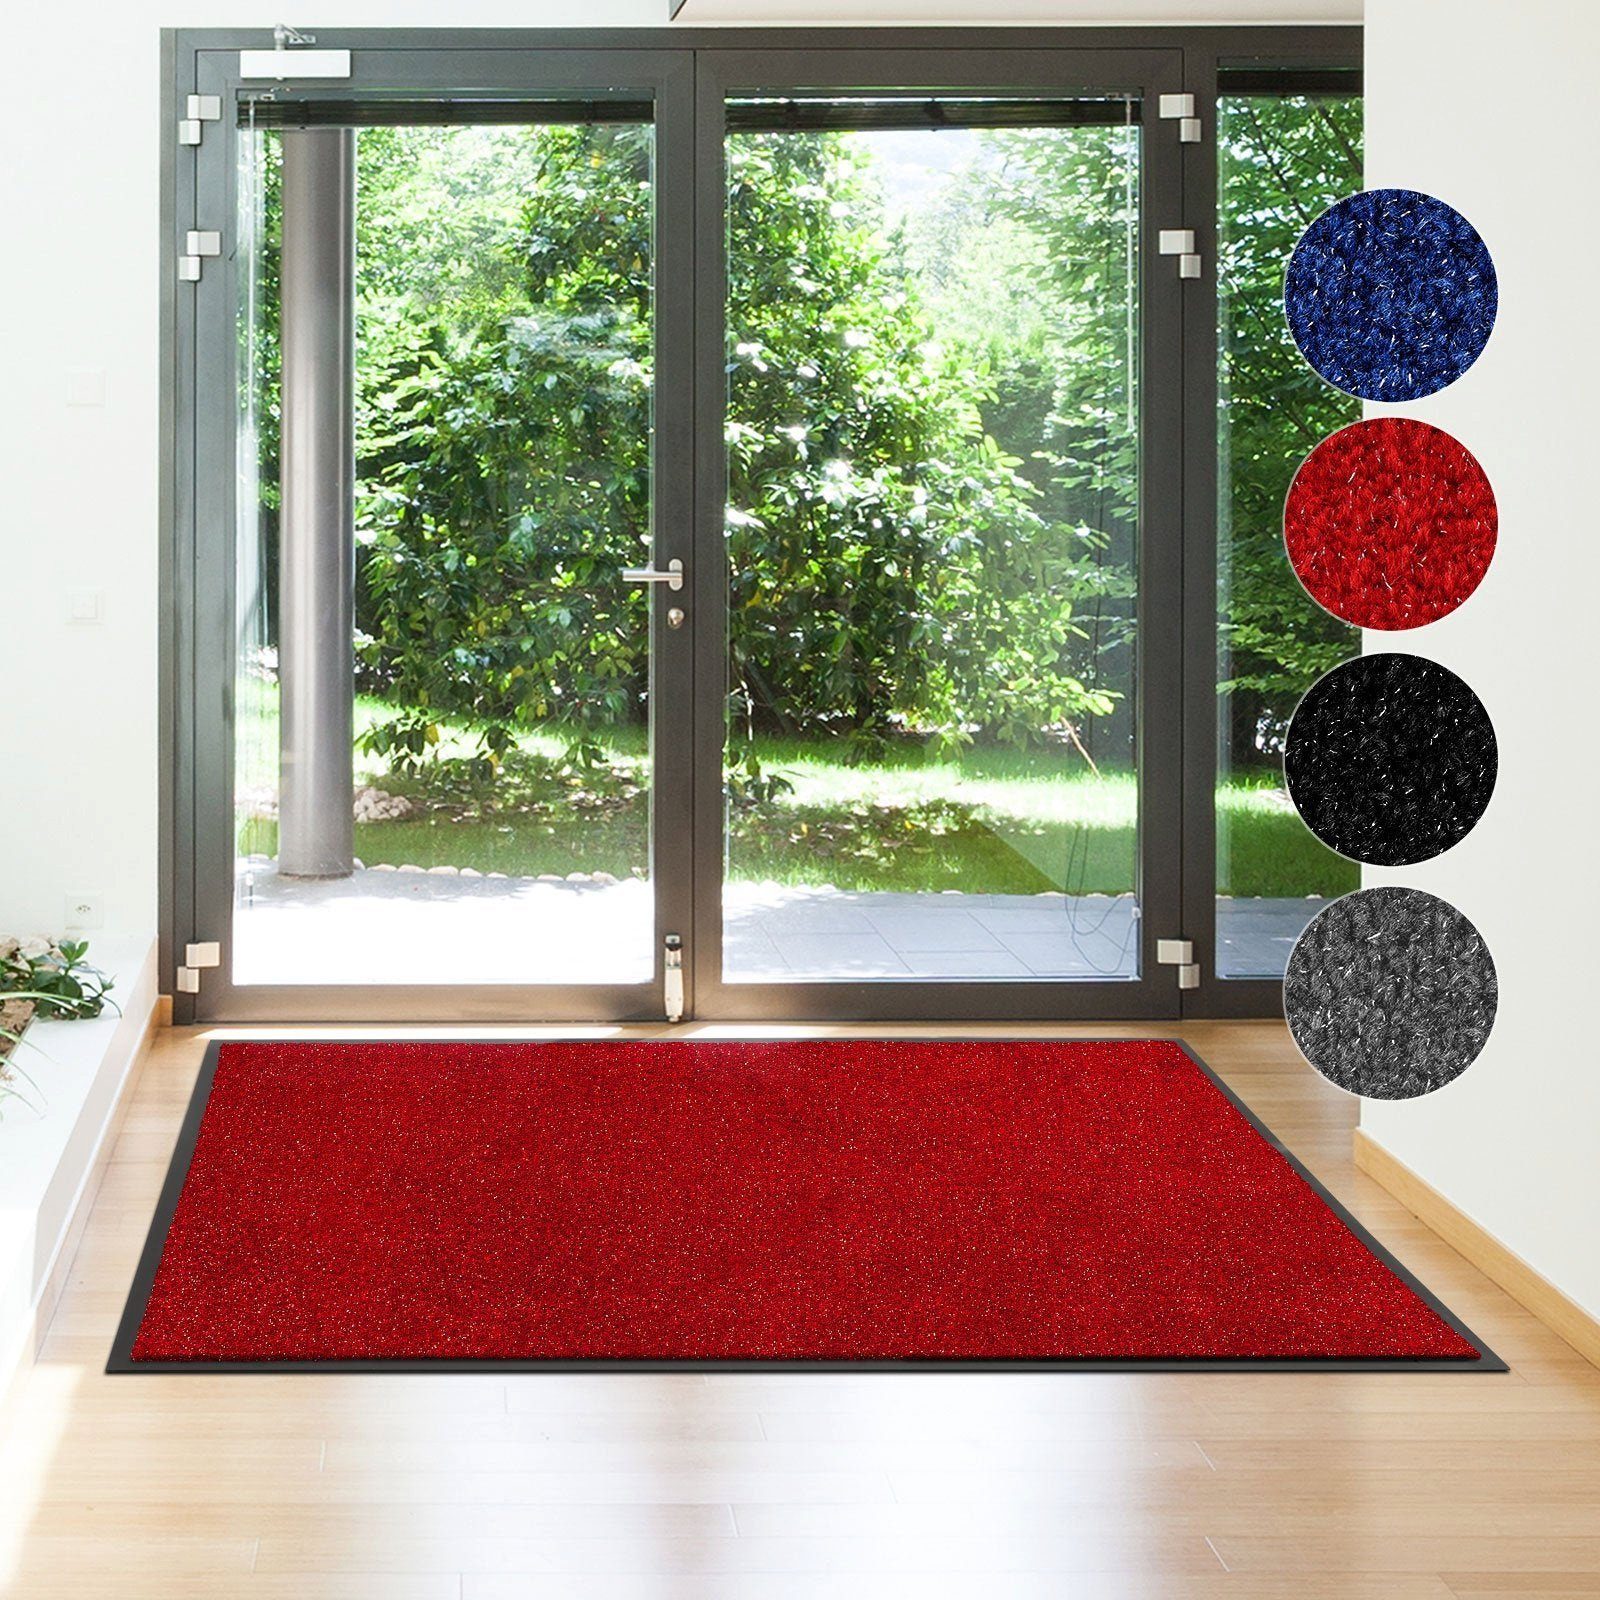 Rechteckig, Floordirekt, Fußmatte Größen, Rot & in vielen Eingangsmatte mm Farben Schmutzfangmatte Flash, 5.5 Höhe: Sauberlaufmatte,